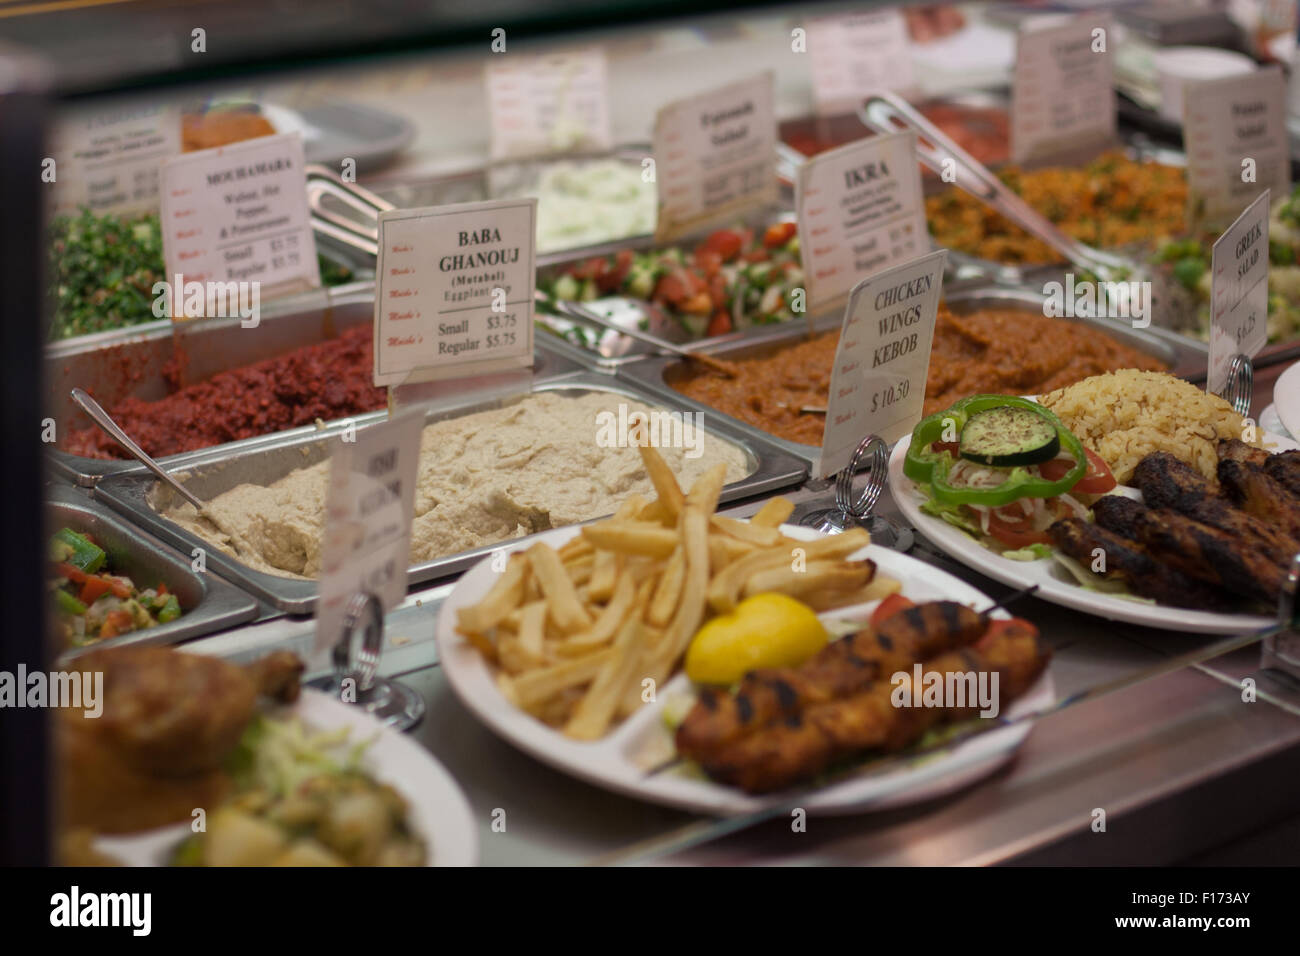 Baba ghanouj cibo greco ristoranti mediorientali nel display in vetro Foto Stock